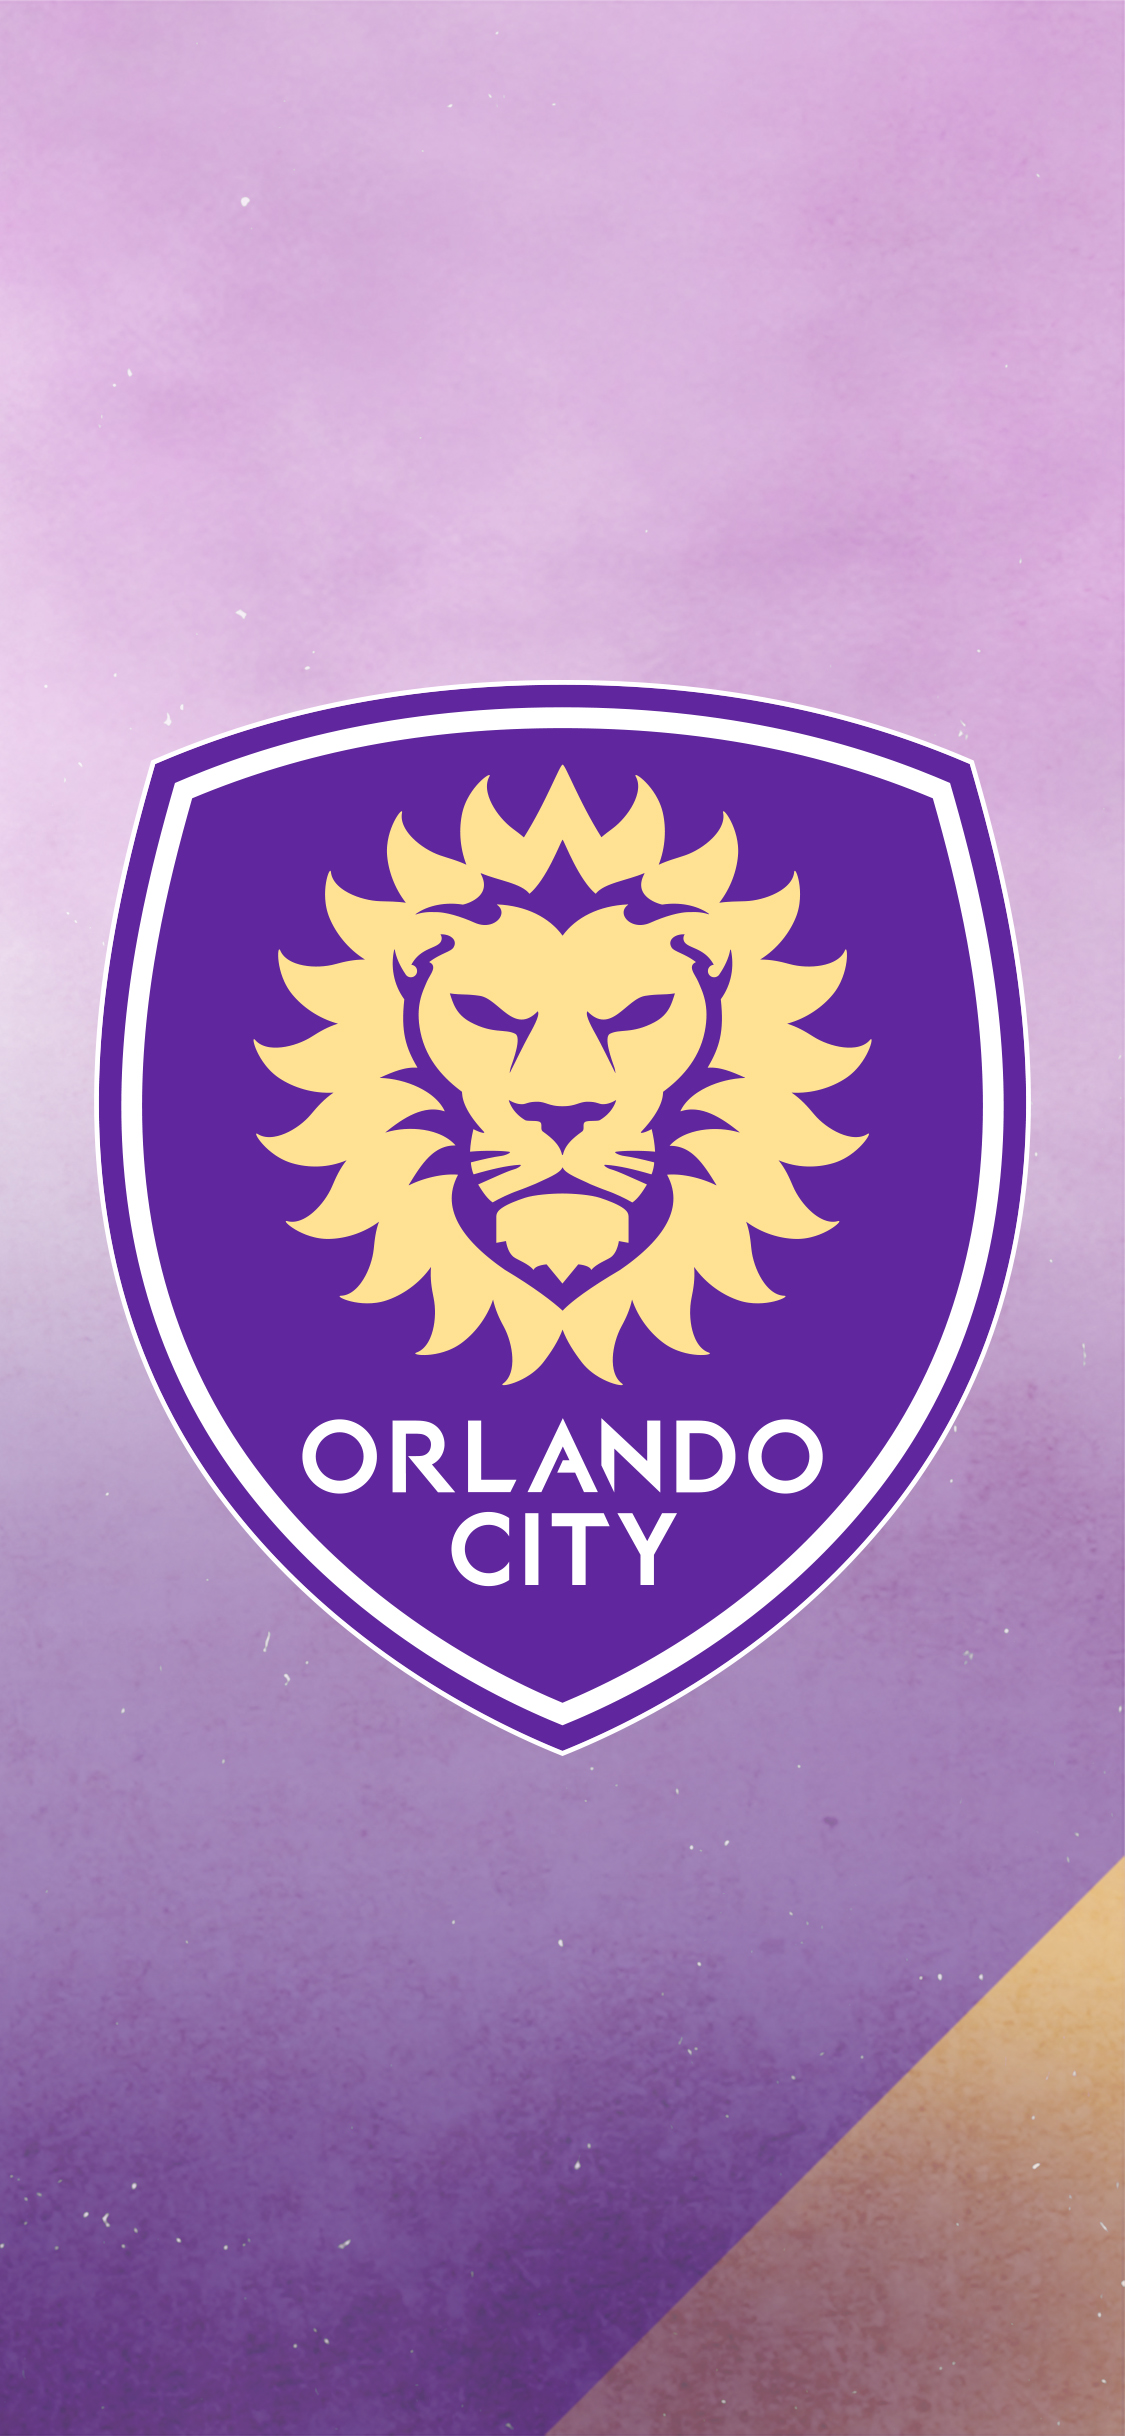 Downloads Orlando City Soccer Club